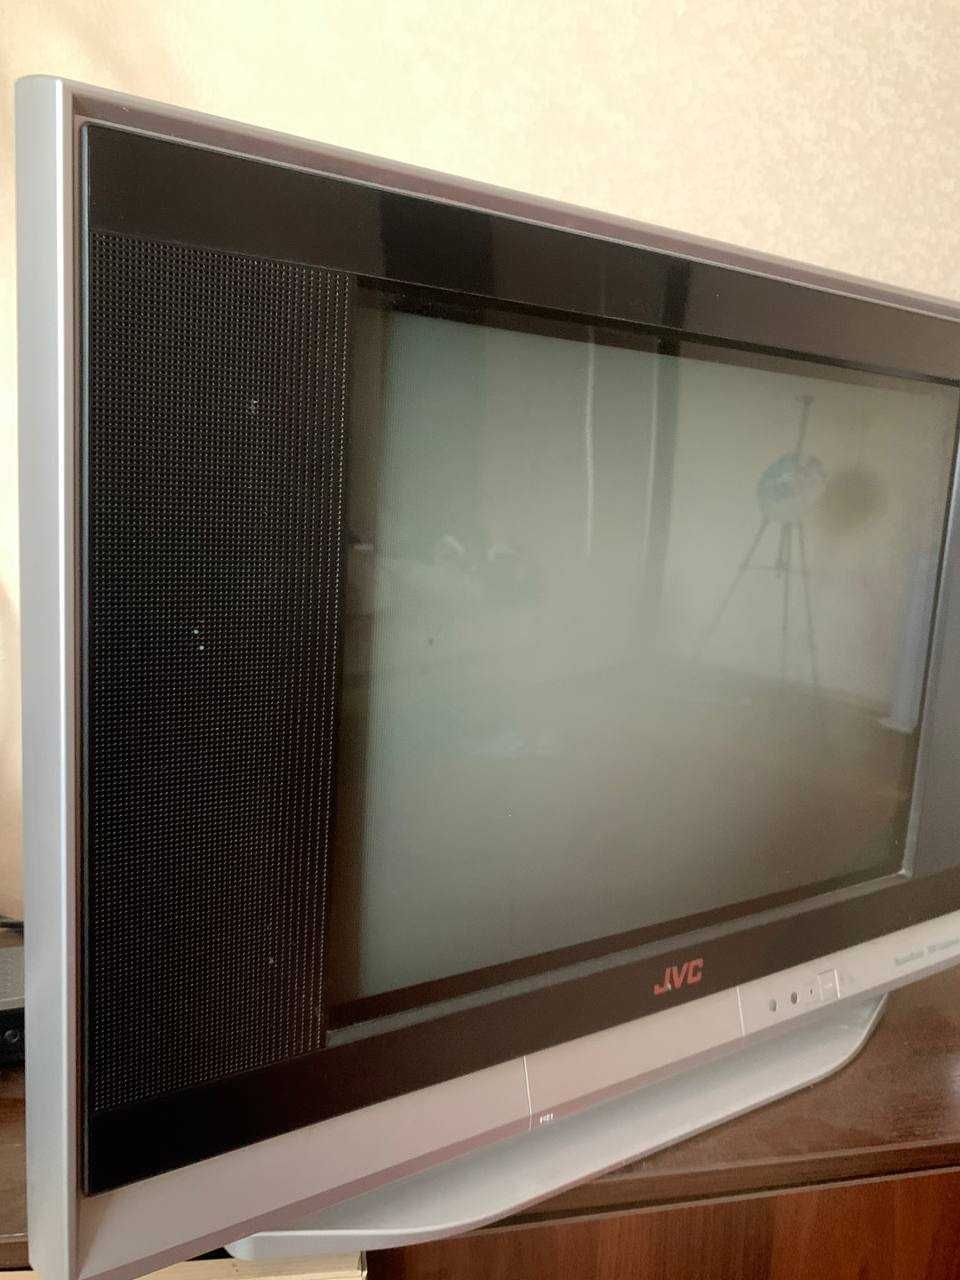 Телевізор  JVC в гарному робочому стані, діагональ 50